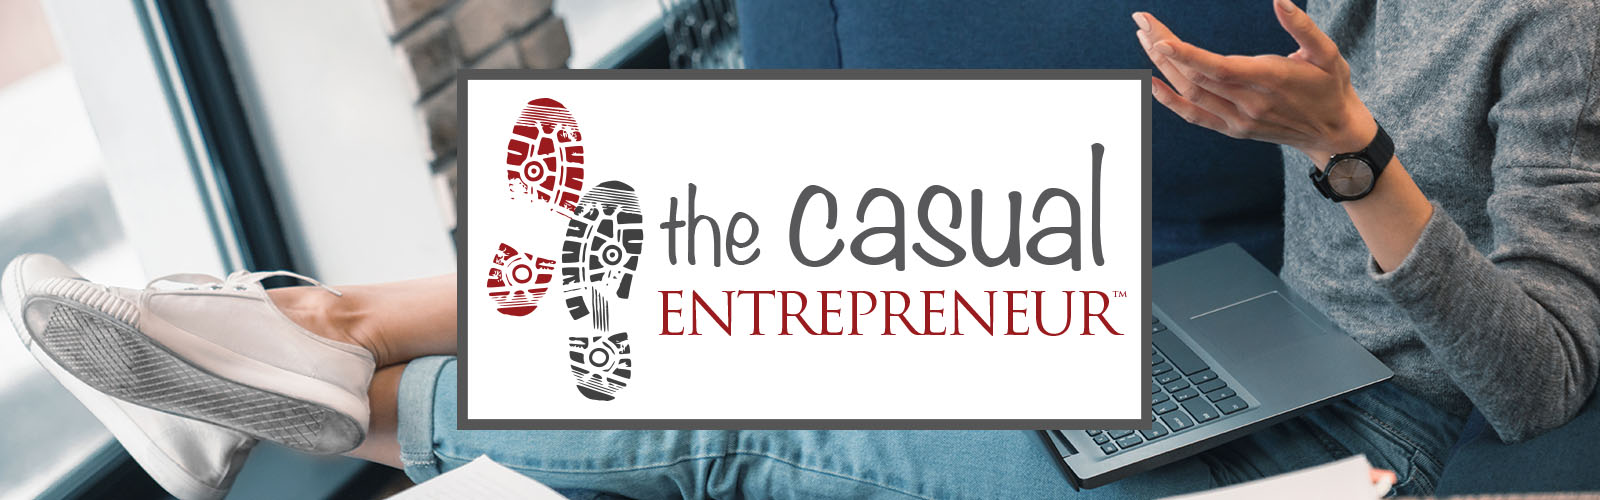 The Casual Entrepreneur Members